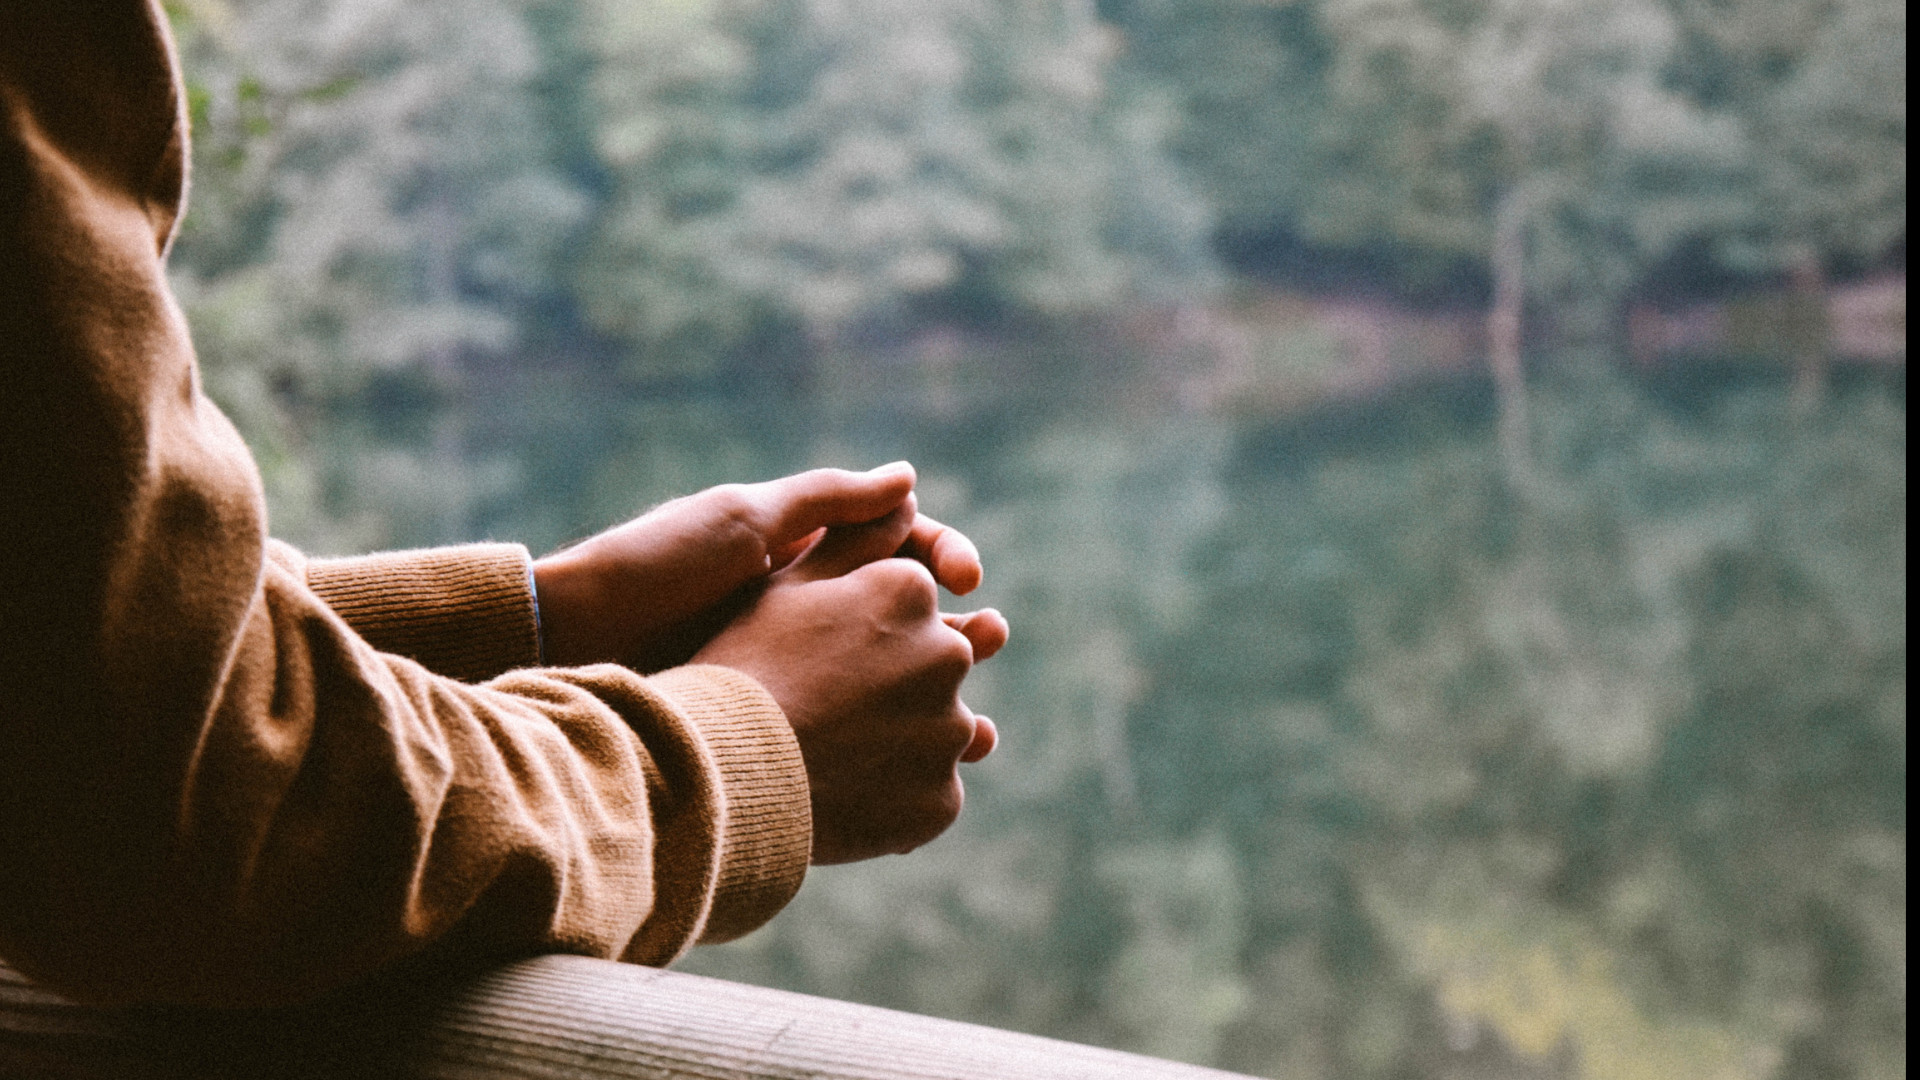 Imagen de manos de persona apoyada en una barandilla mirando a la naturaleza.